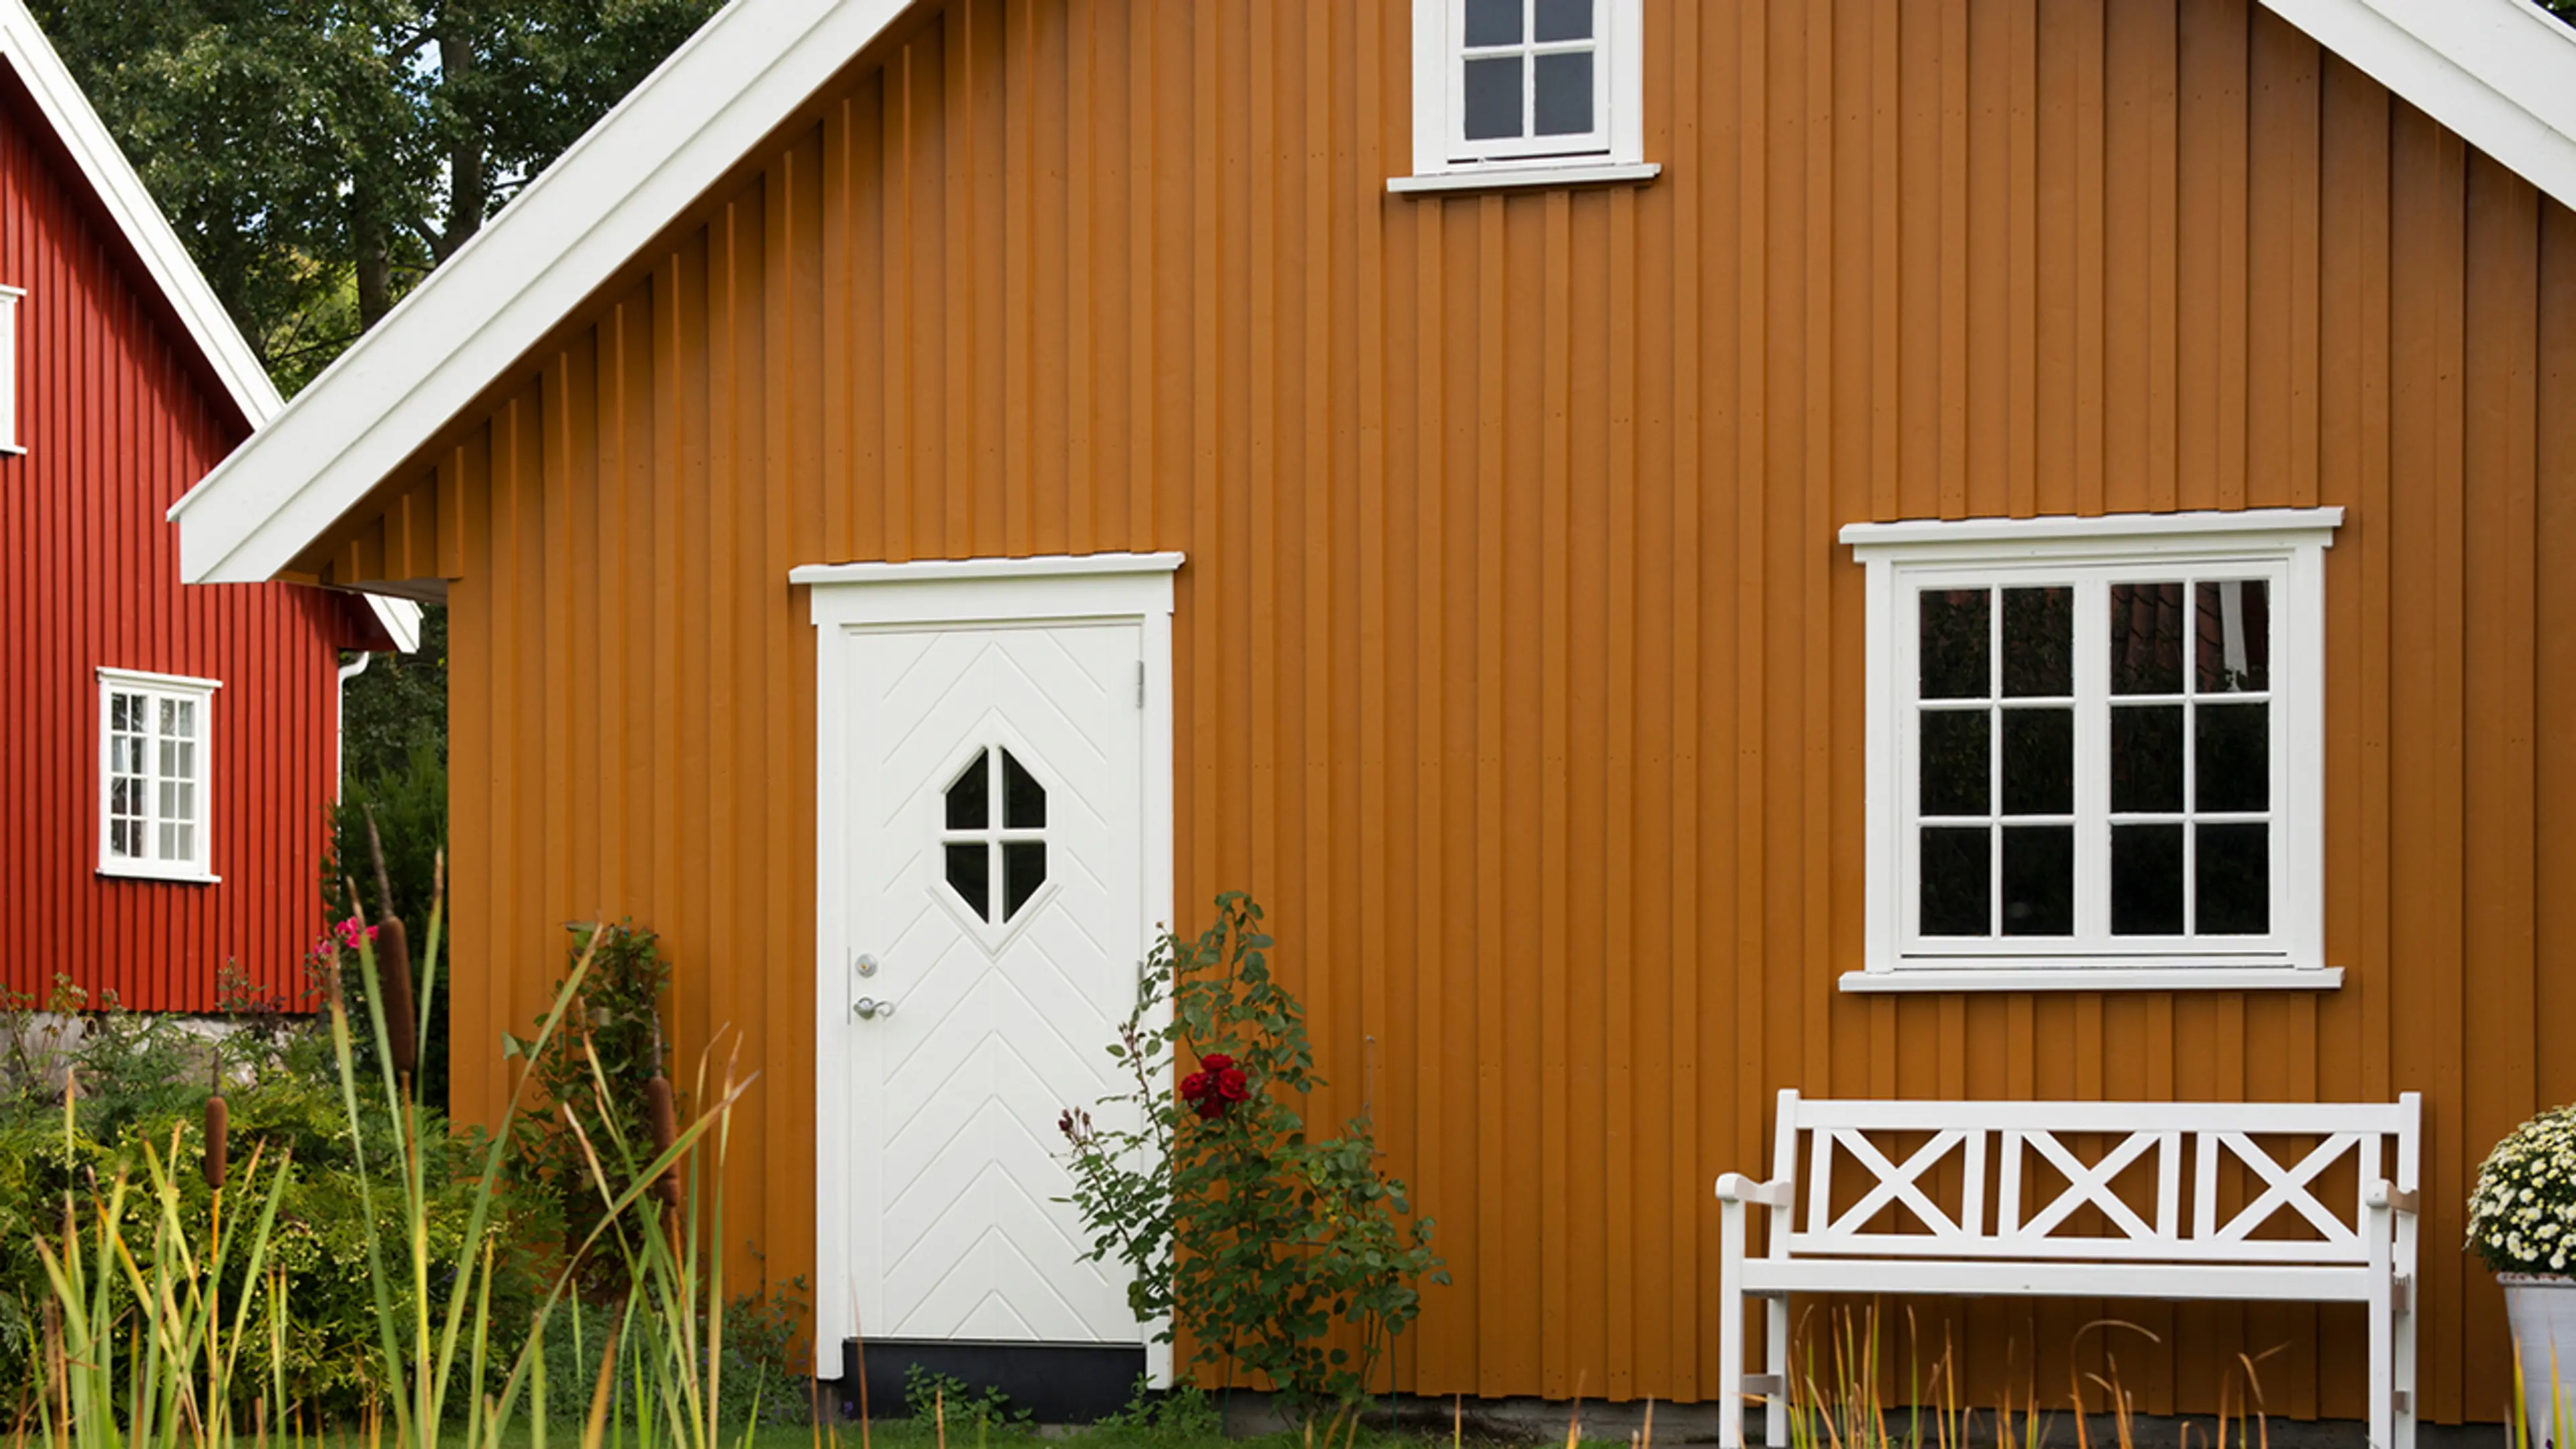 Ny kledning på gammelt hus i gult med hvite karmer og dører og rødt hus i bakgrunnen.